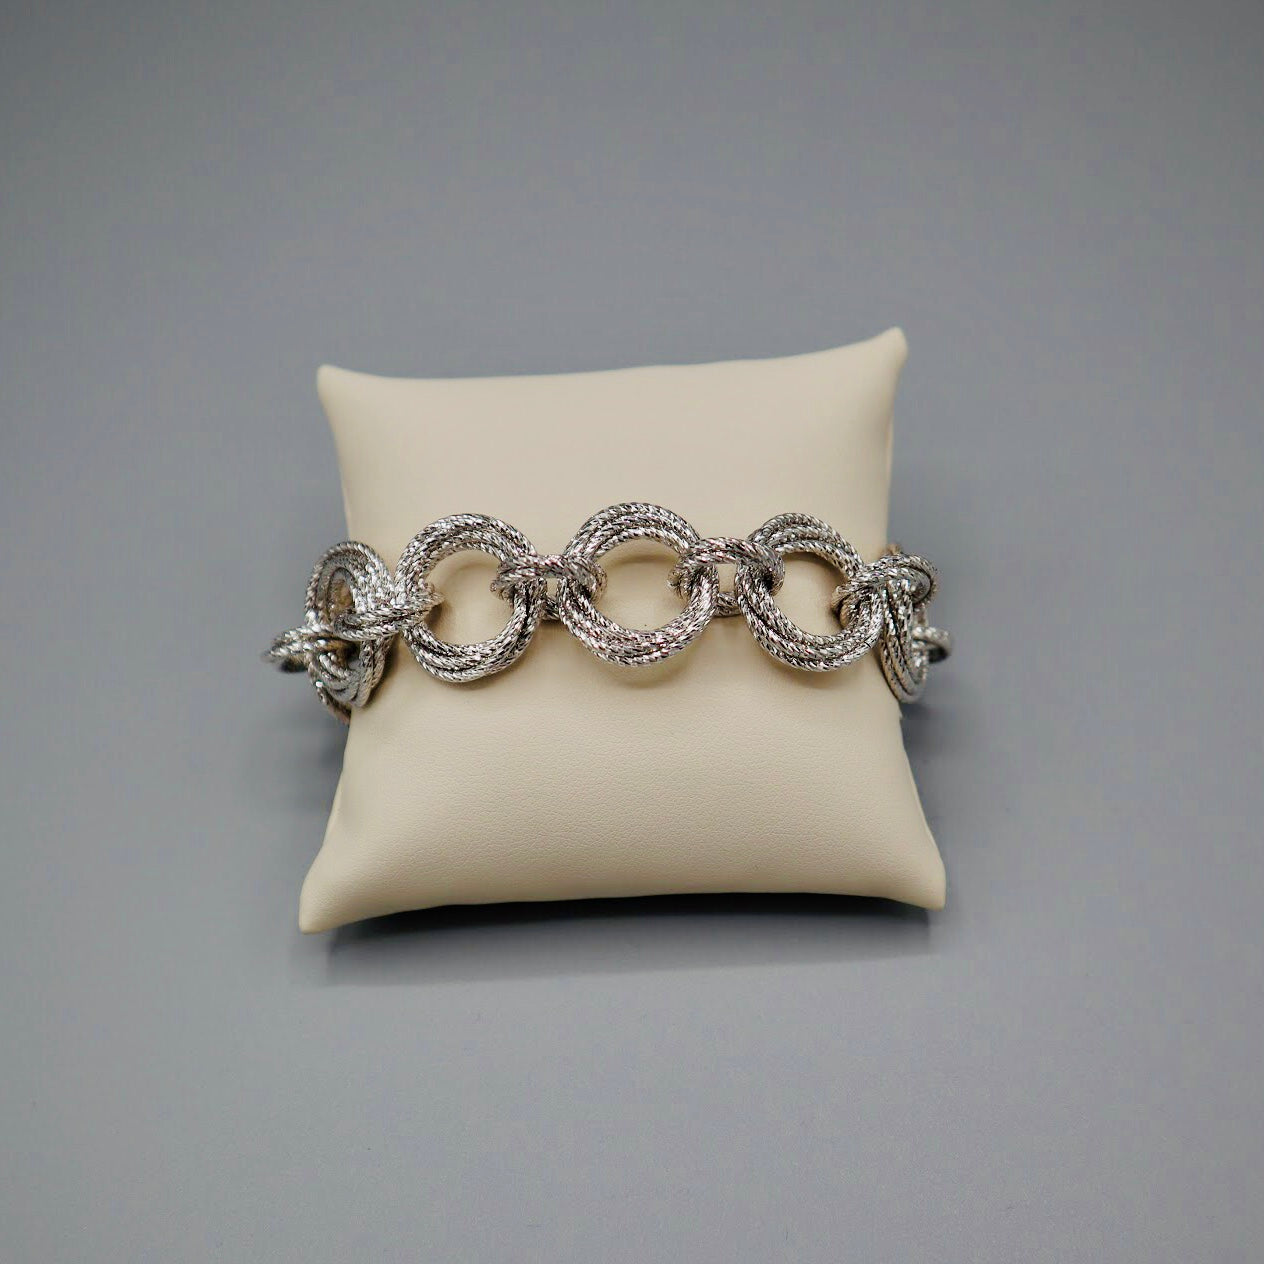 Fraboso - Silver Bracelet